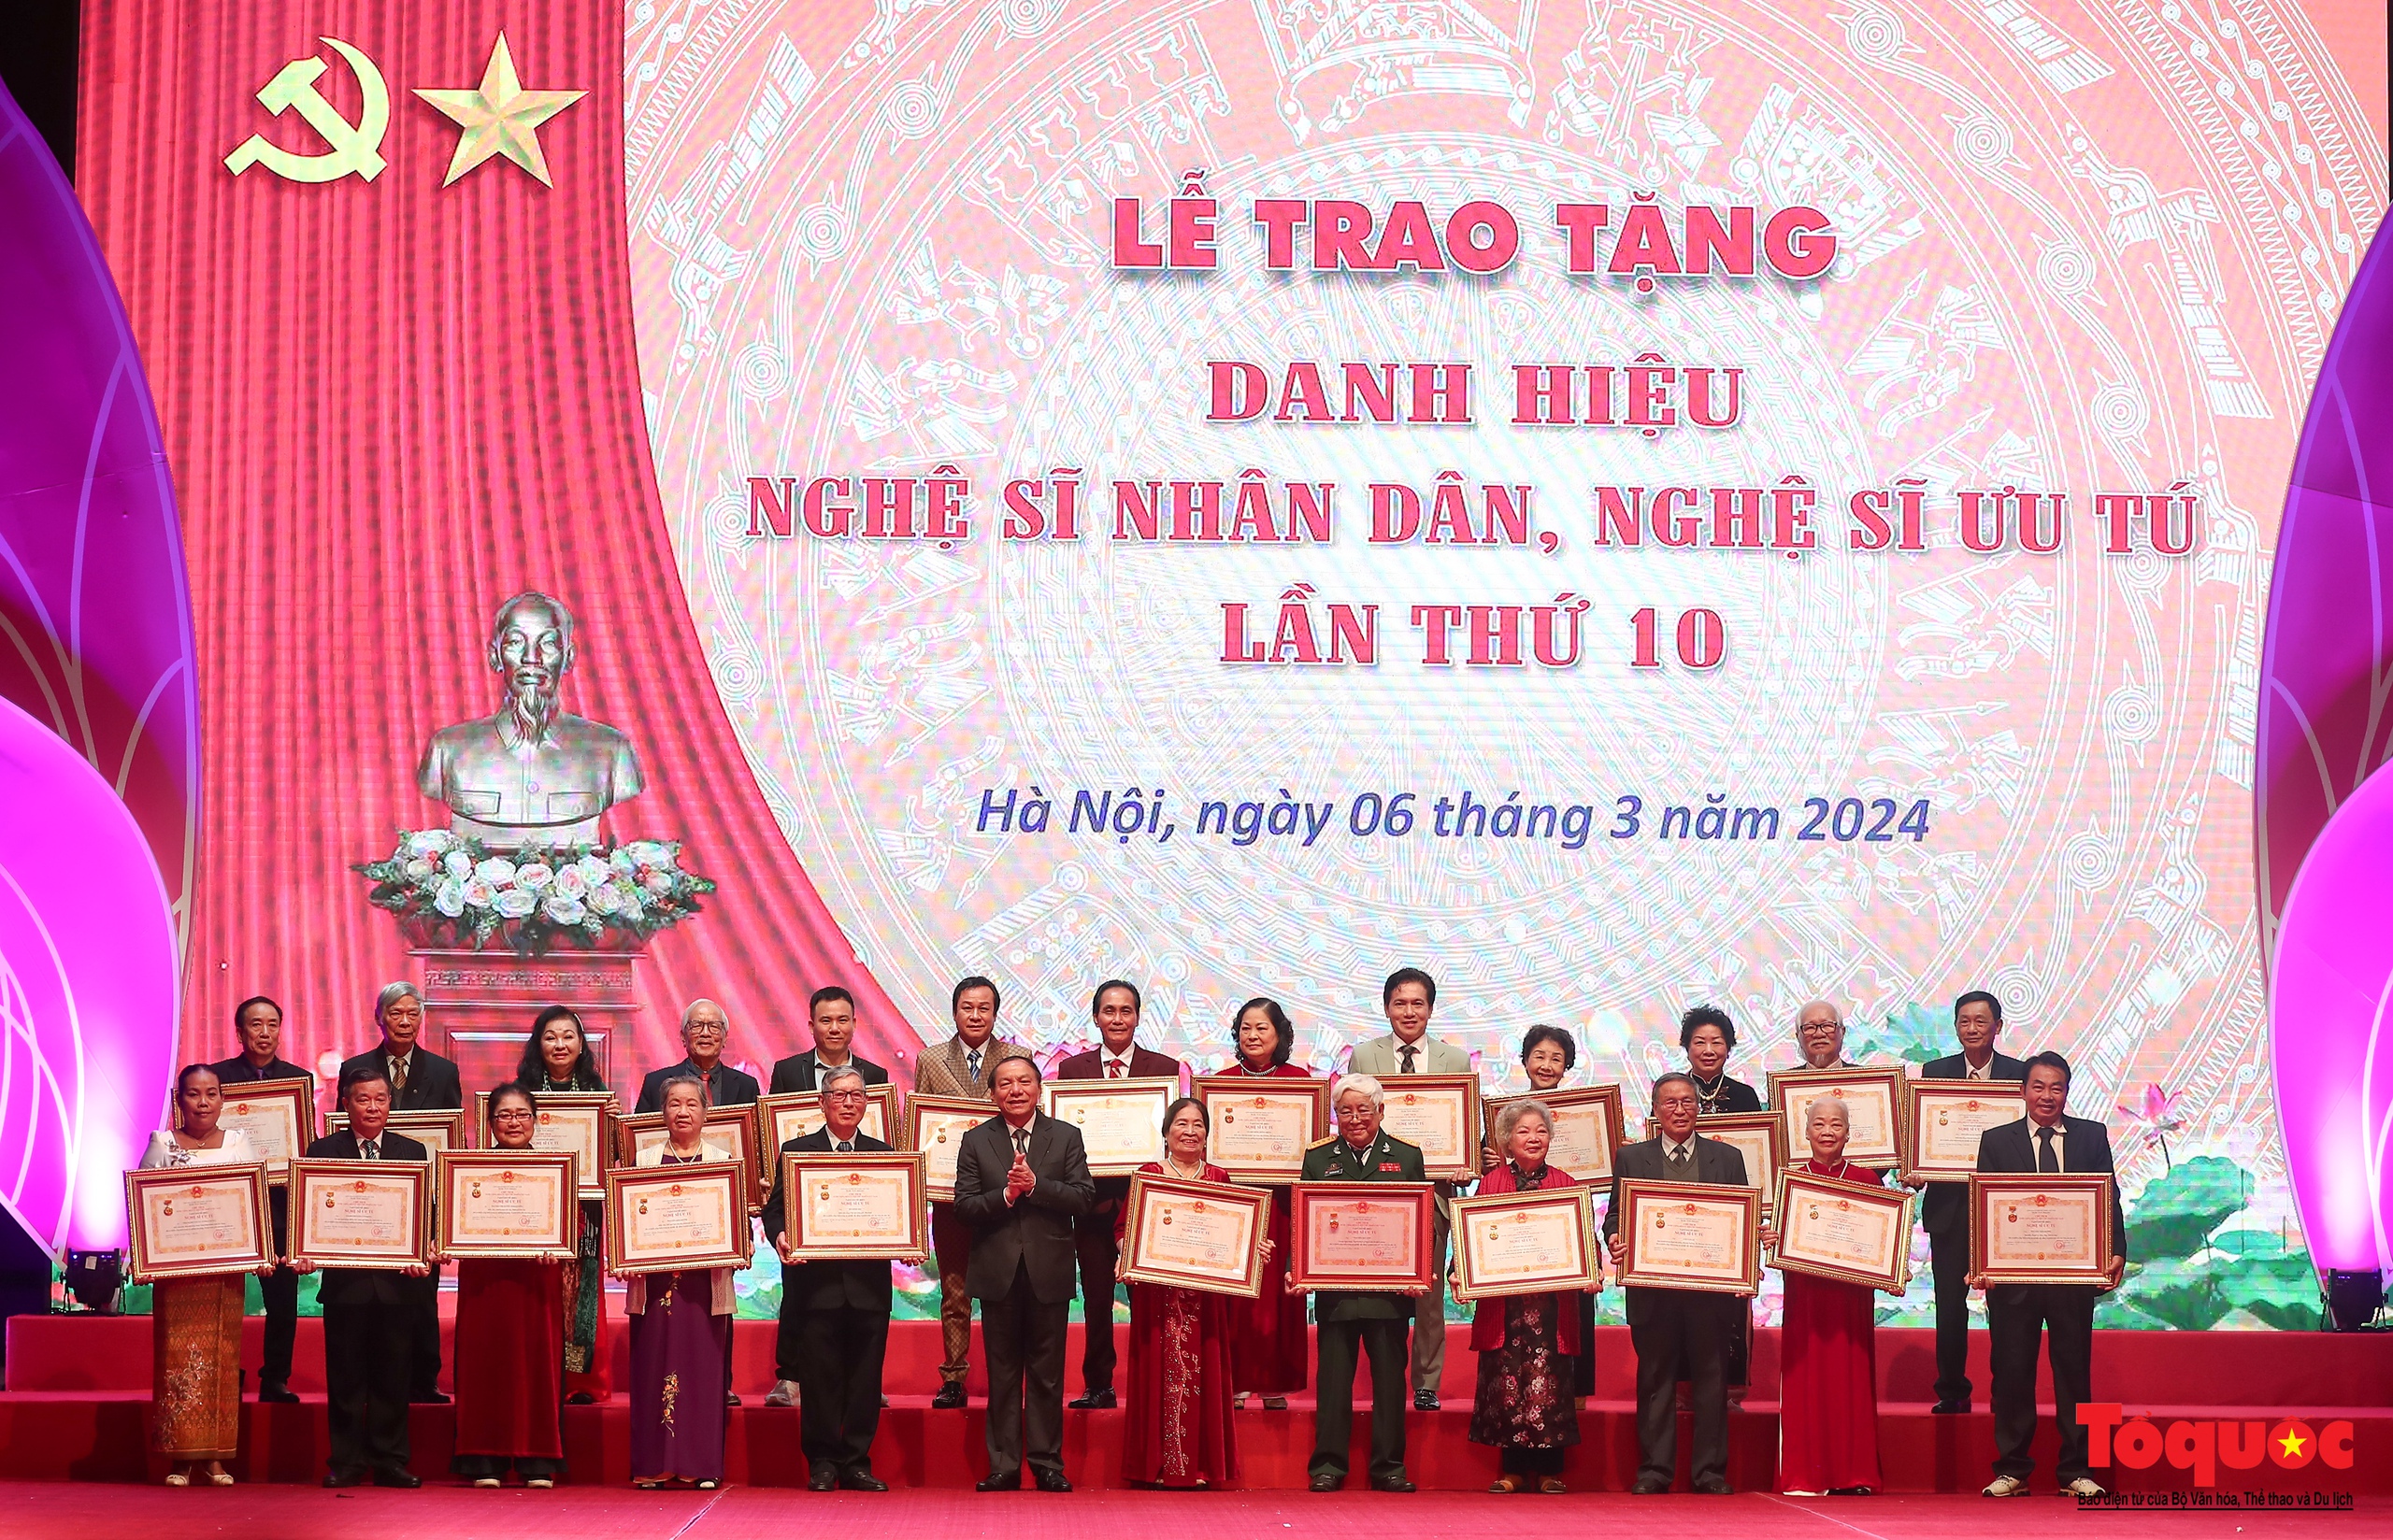 Toàn cảnh Lễ trao tặng danh hiệu Nghệ sĩ Nhân dân, Nghệ sĩ Ưu tú lần thứ 10 - Ảnh 23.